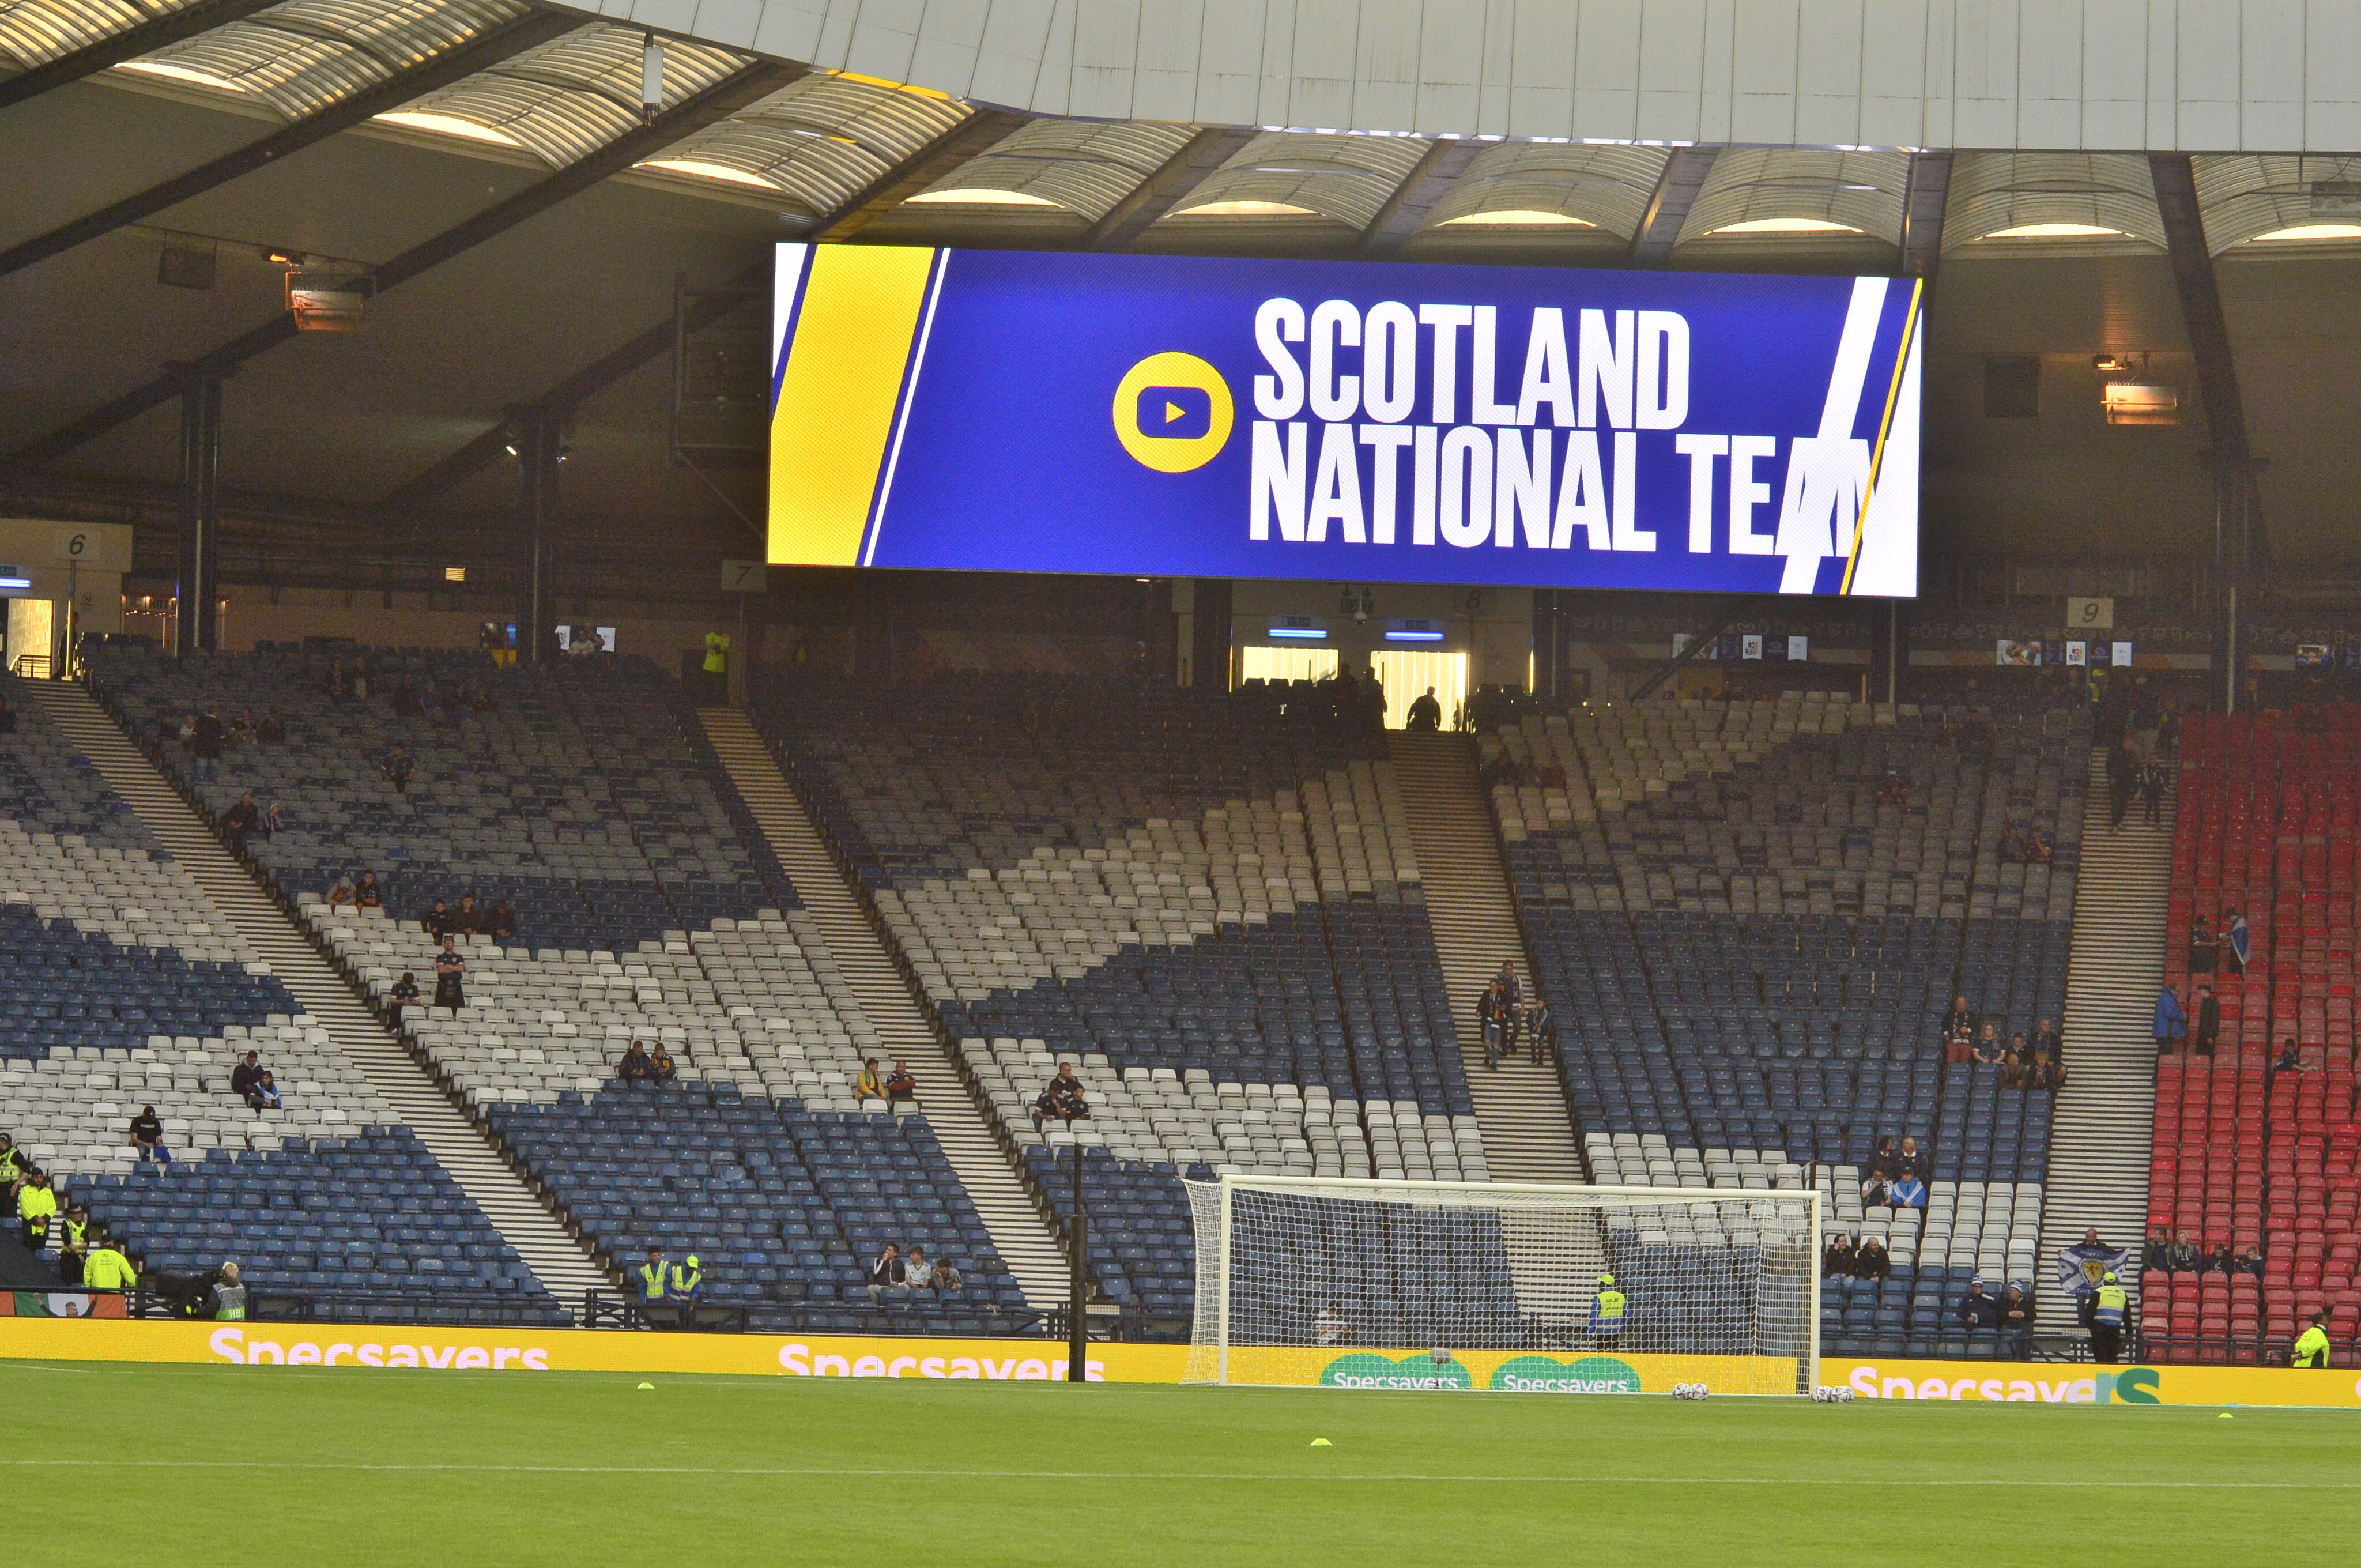 Het Schotse nationale team speelt zijn thuiswedstrijden in het beroemde Hampden Park in Glasgow